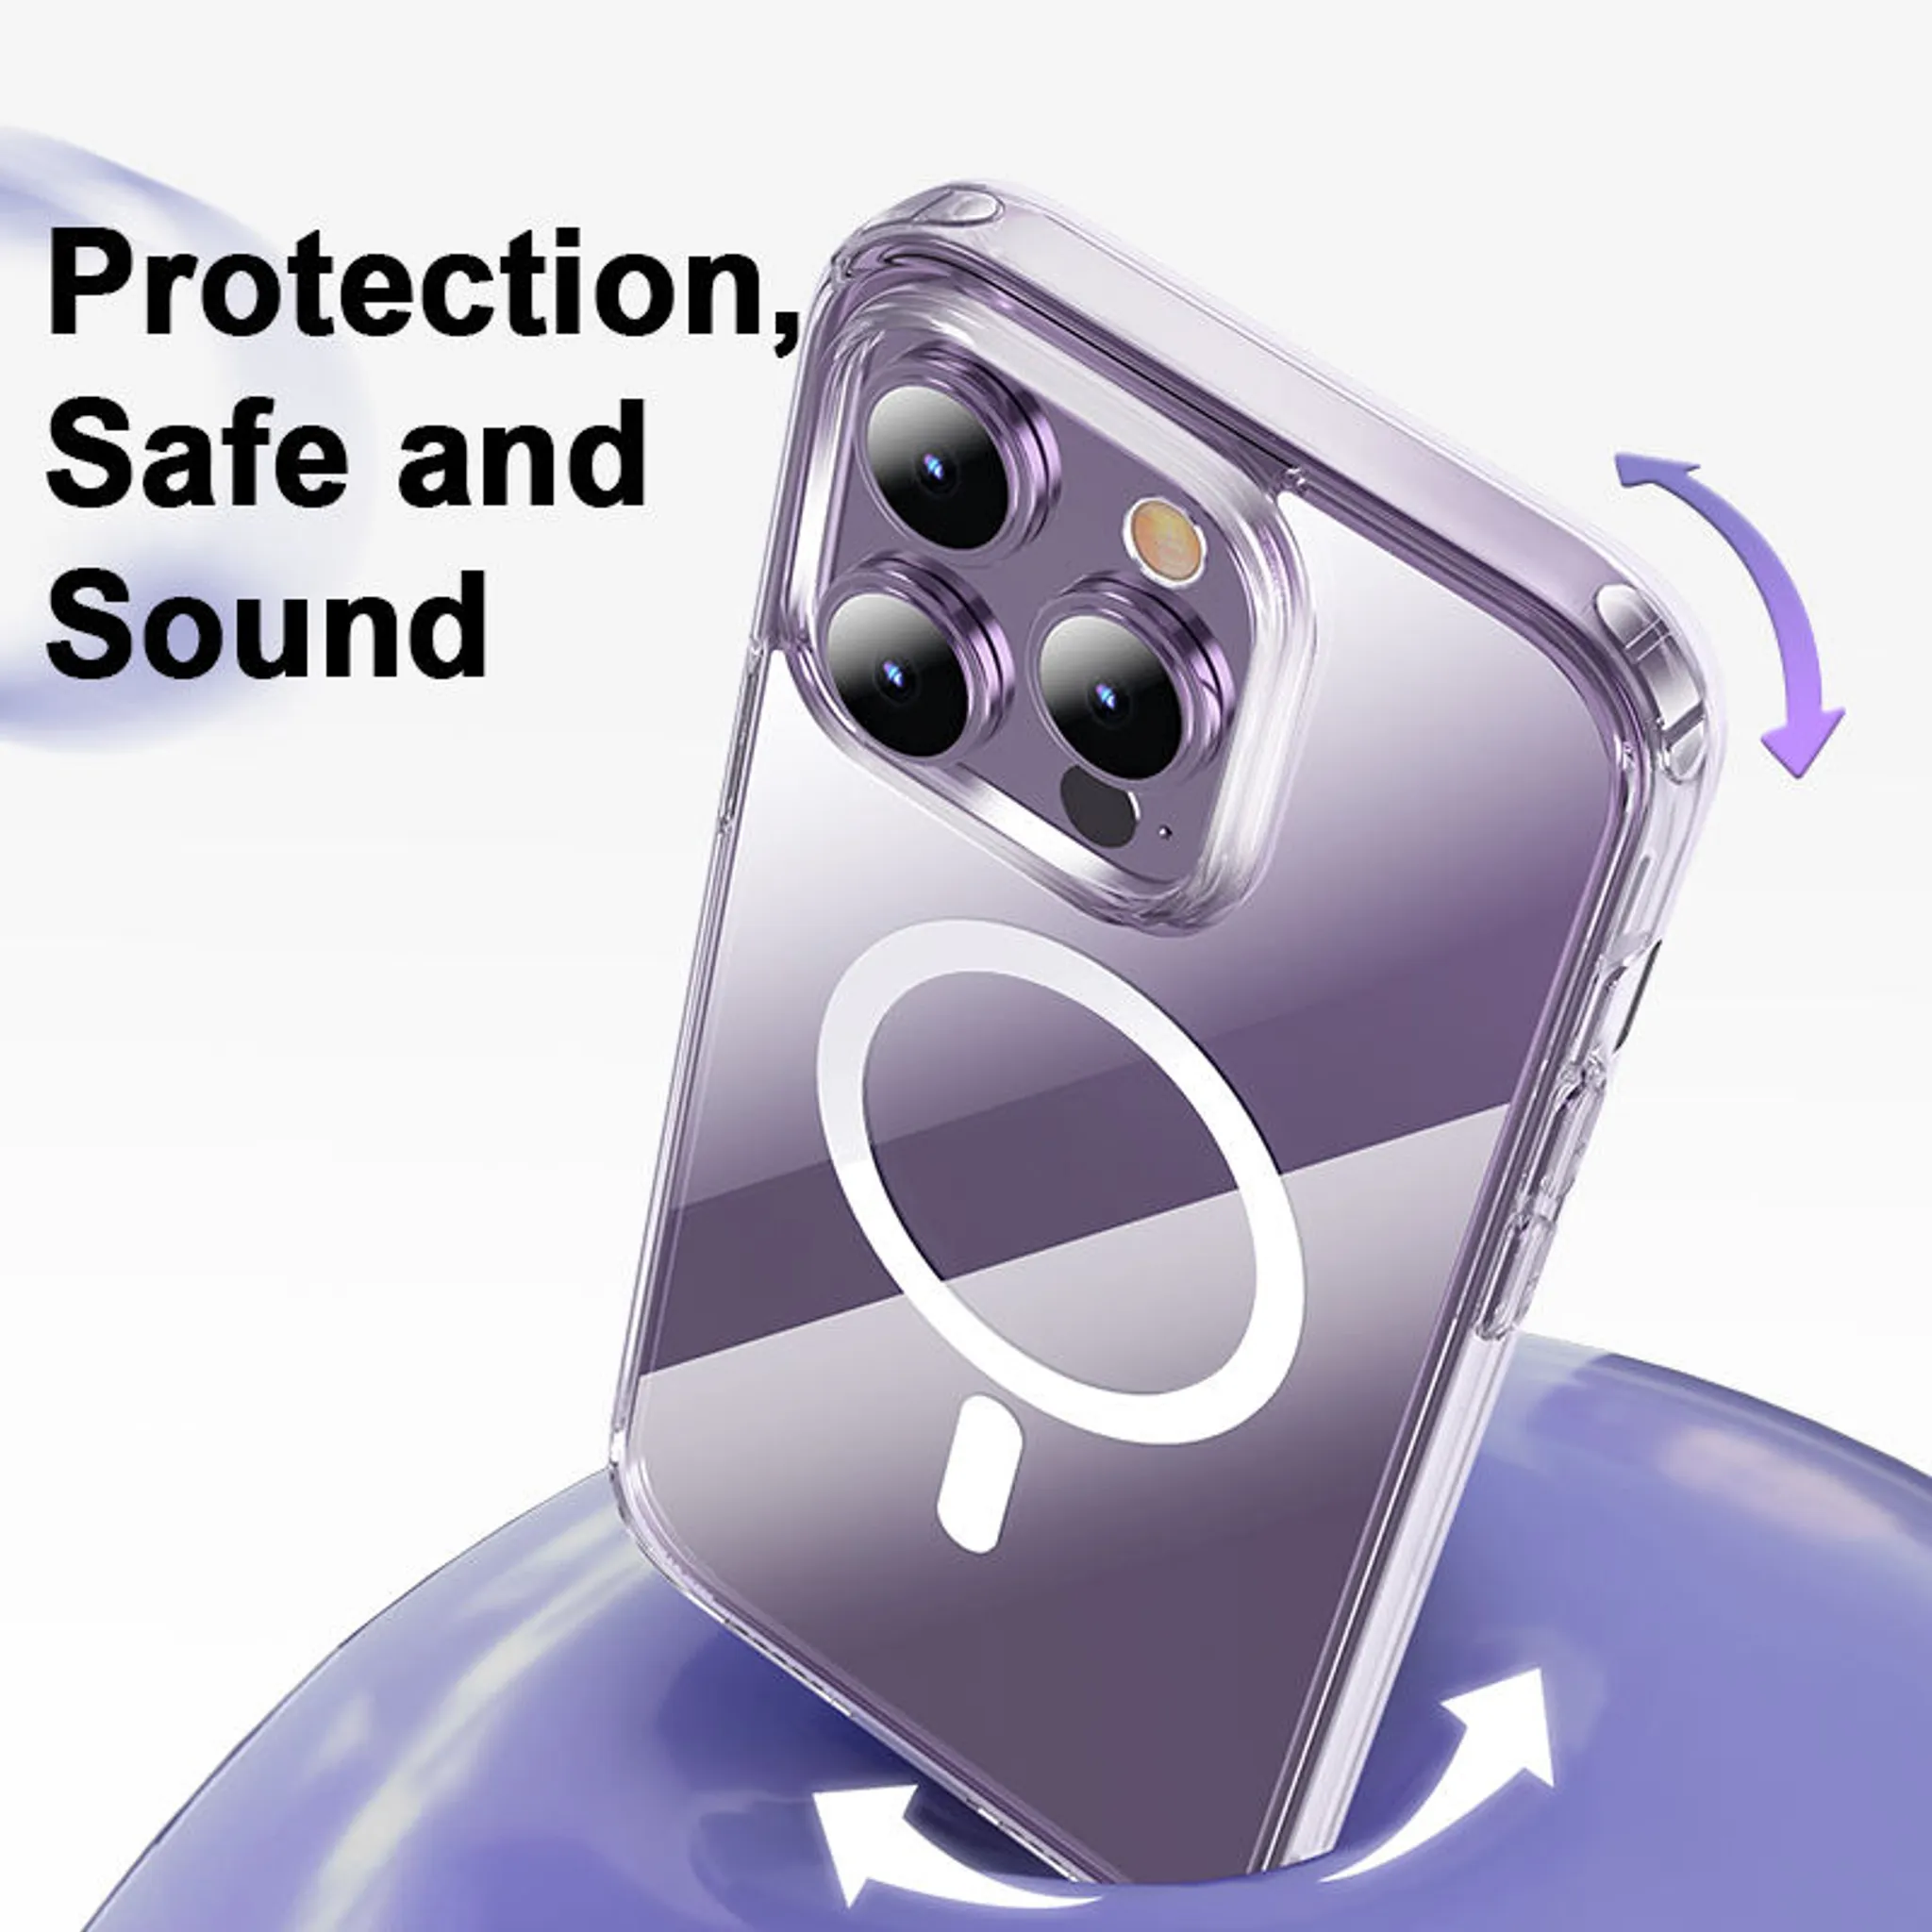 Entdecken Sie die besten MagSafe-Zubehörteile für Ihr iPhone